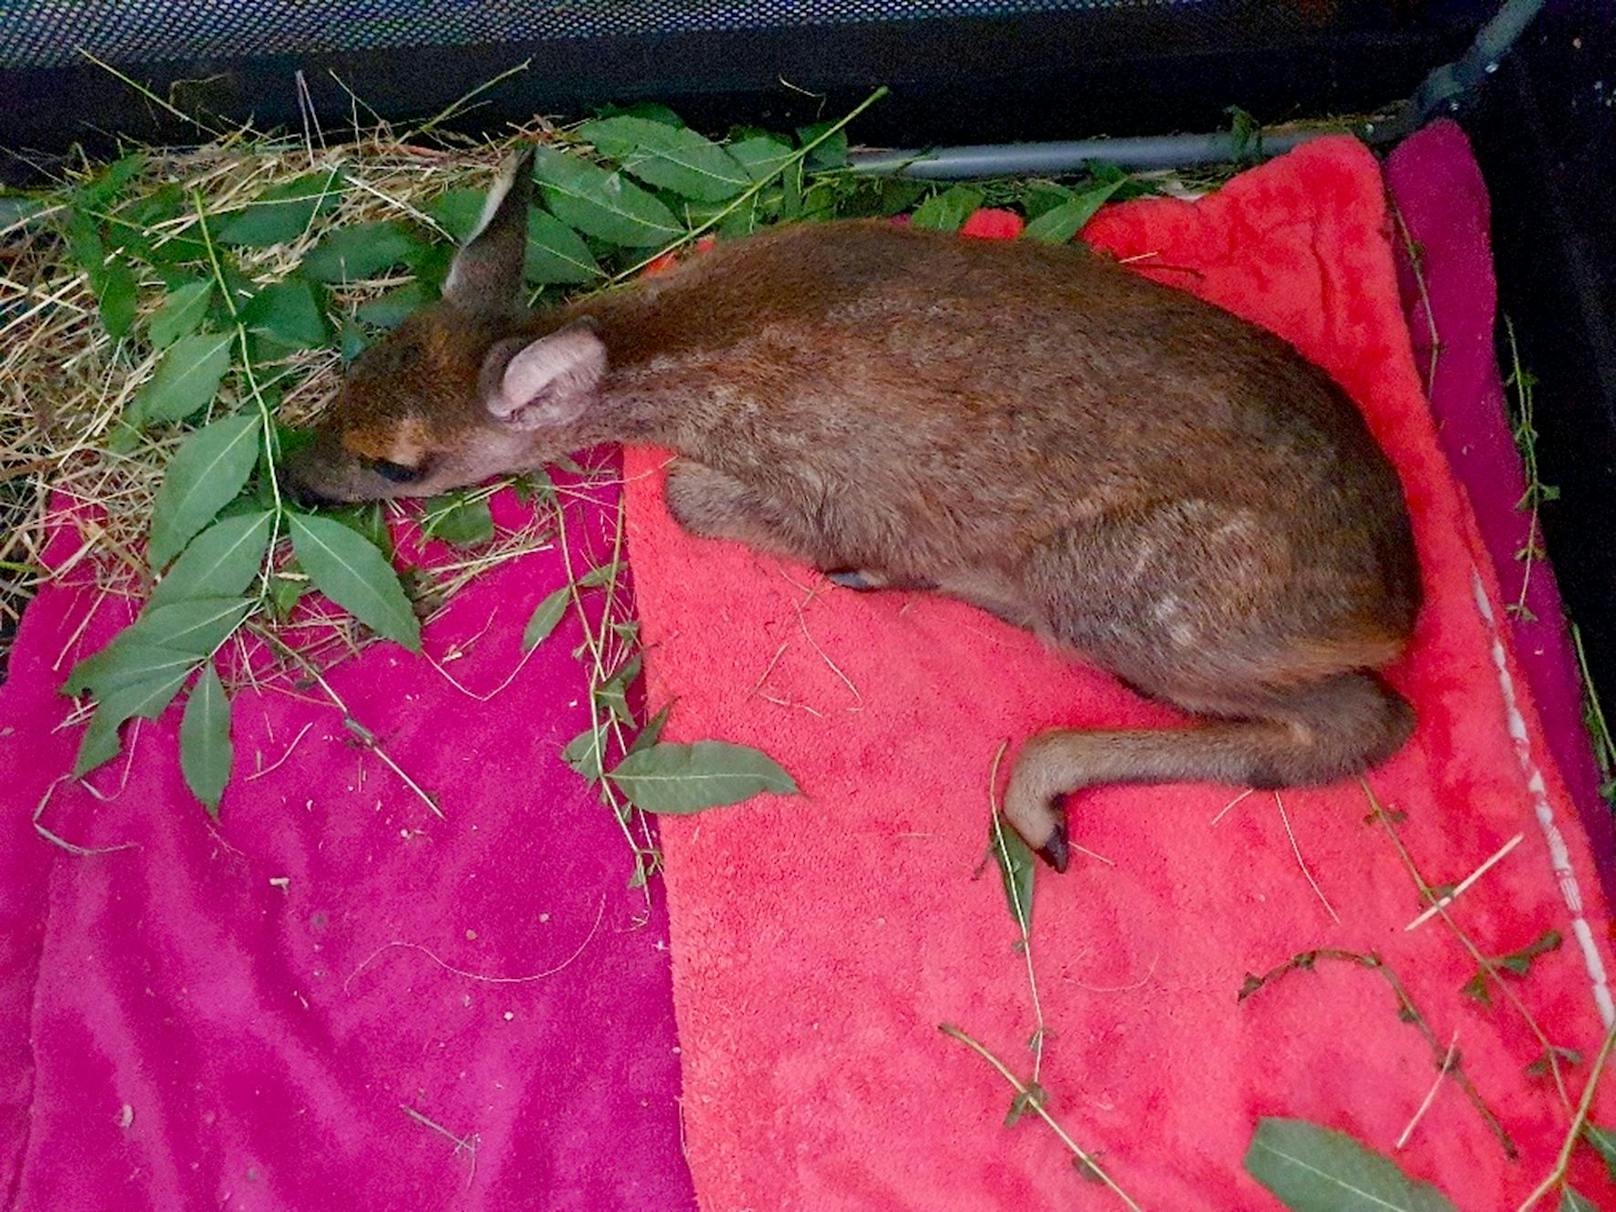 Das junge, weibliche Rehkitz traf beim Tierparadies Schabenreith ein und wurde auf den Namen "Marehsi" getauft, doch auch ein Schädelbruch bedroht das Leben des kleinen Wildtiers.